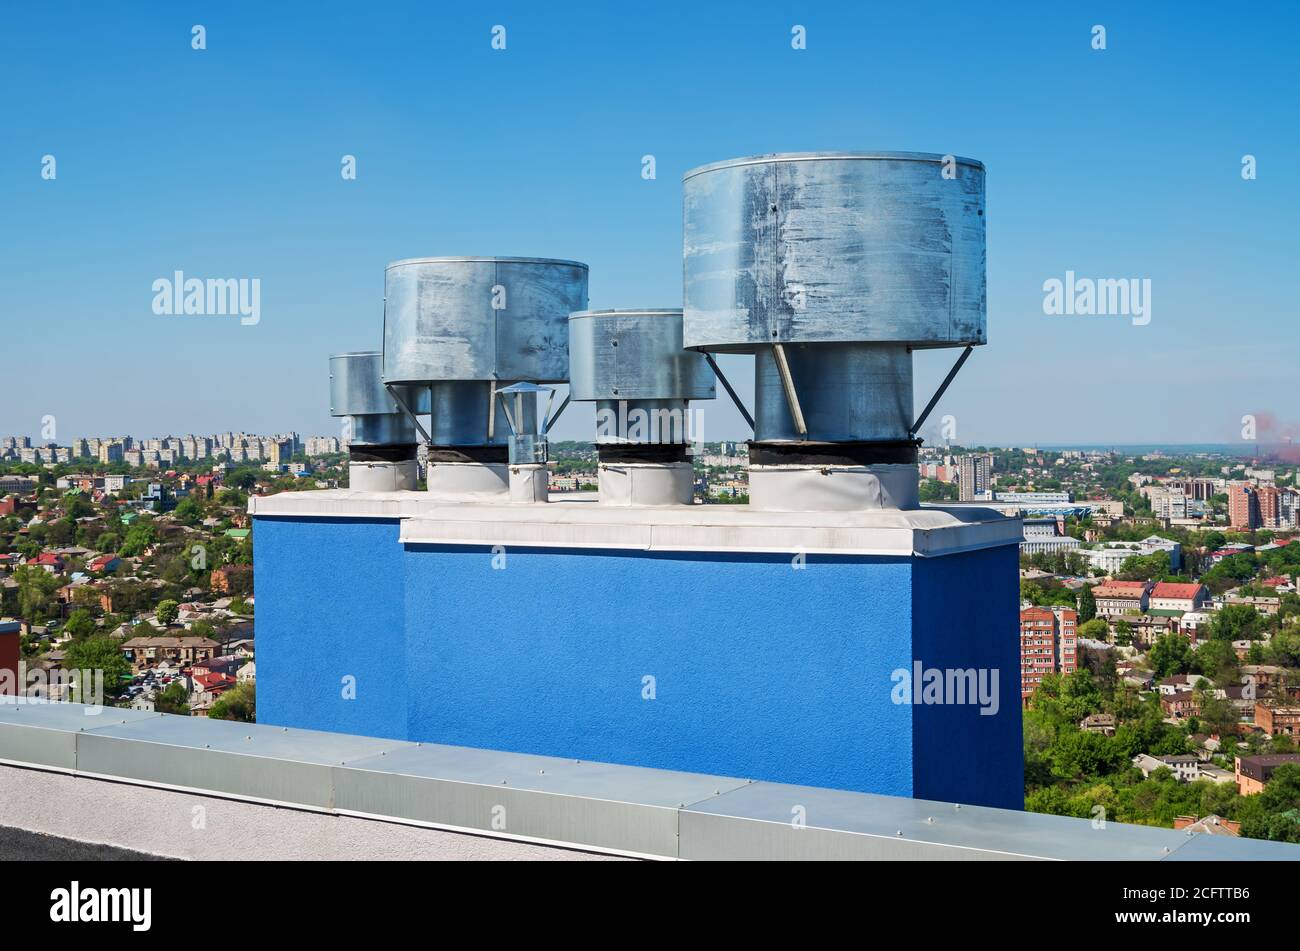 Dispositifs d'ingénierie appelés déflecteurs pour stabiliser et améliorer le tirage naturel du conduit de ventilation sur le toit d'un gratte-ciel Banque D'Images